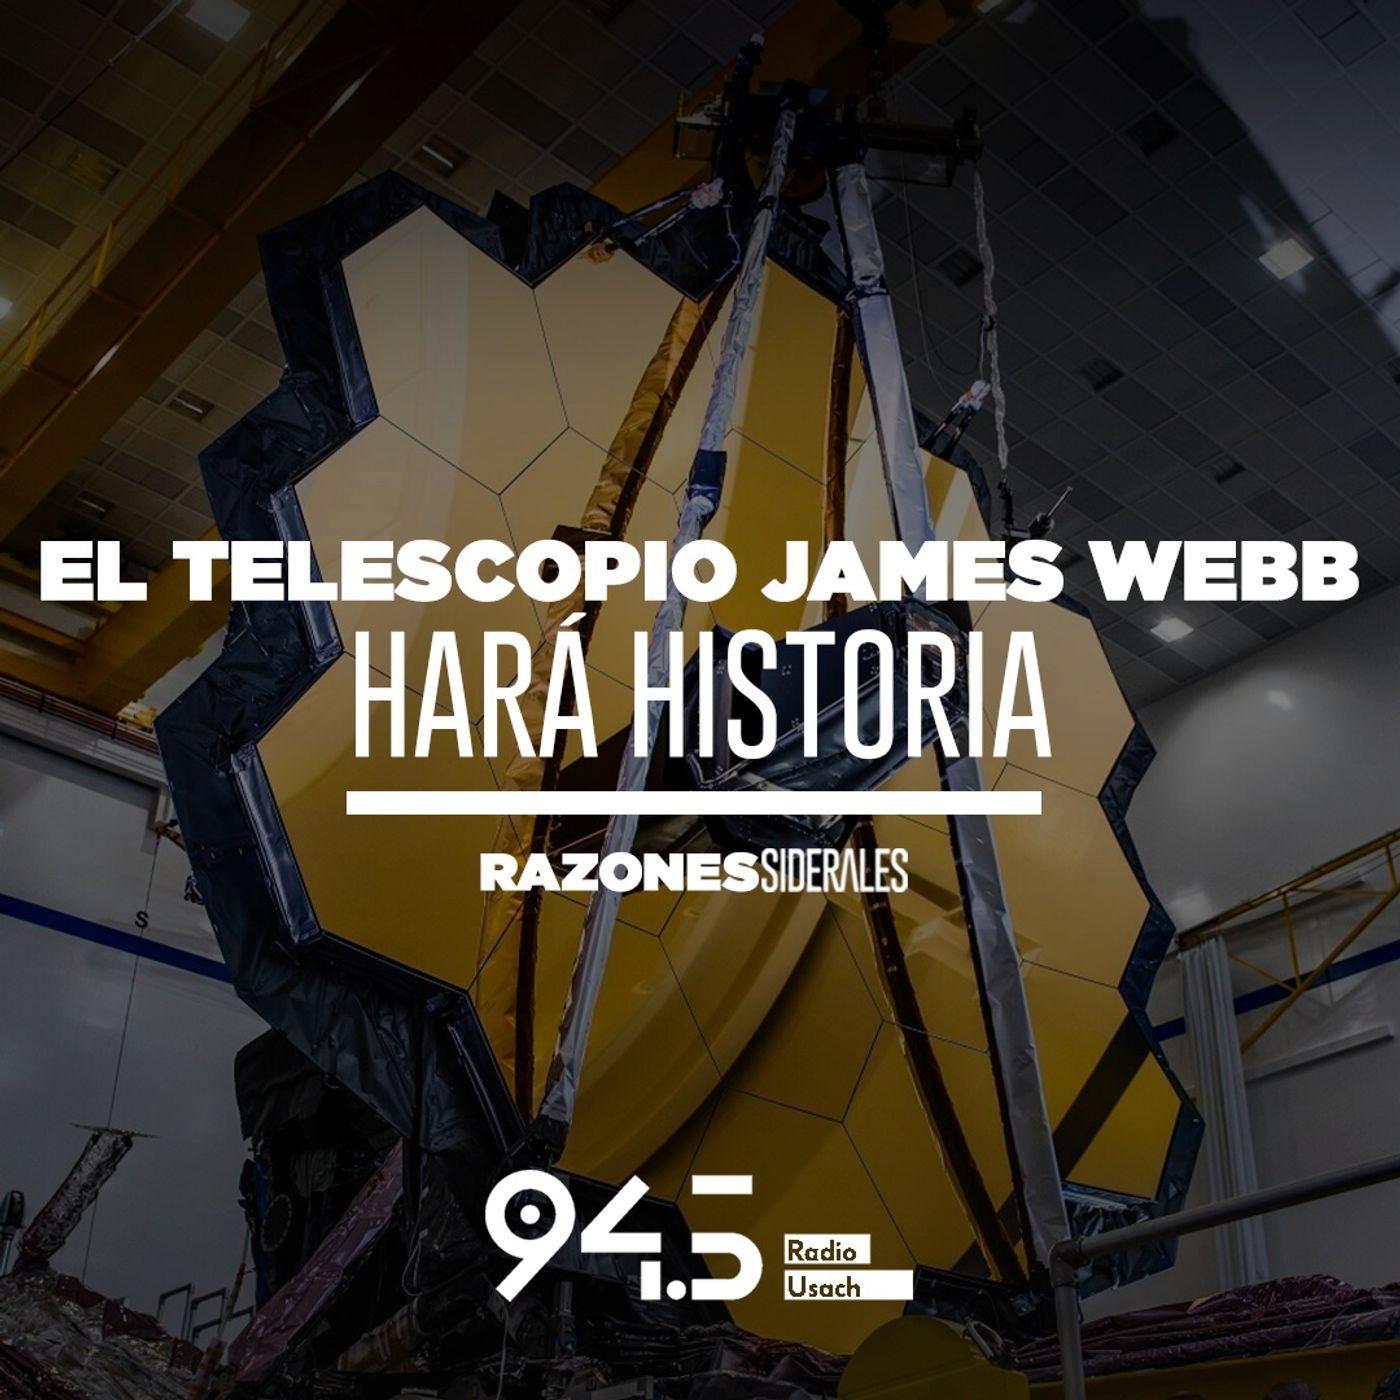 El telescopio James Webb hará historia